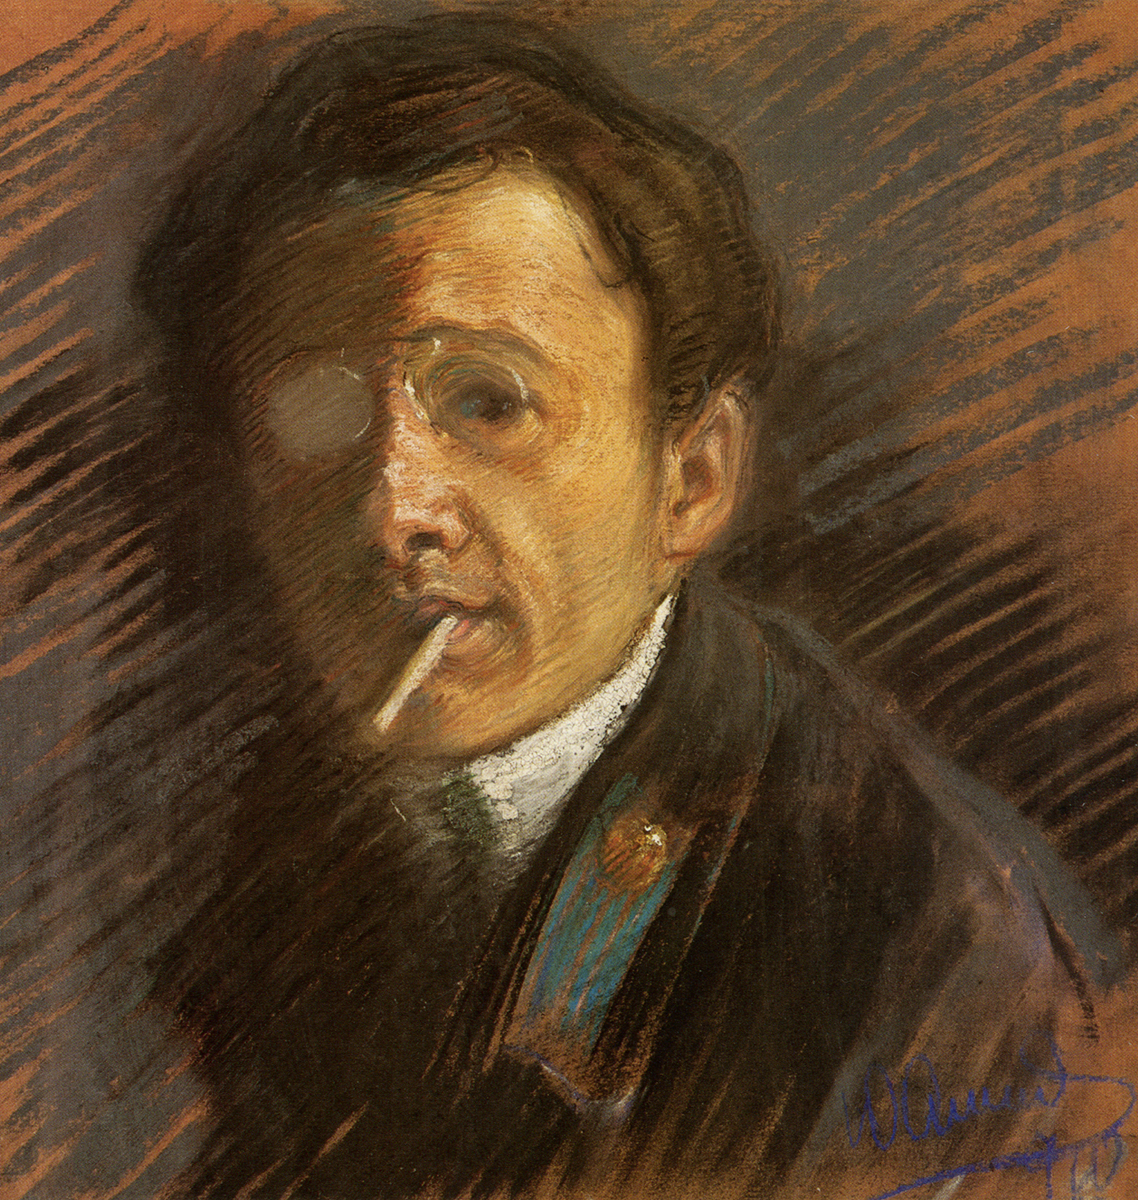 Анненков Ю.П. Автопортрет. 1910. Бумага, пастель, темпера. 36 x 35. ГРМ